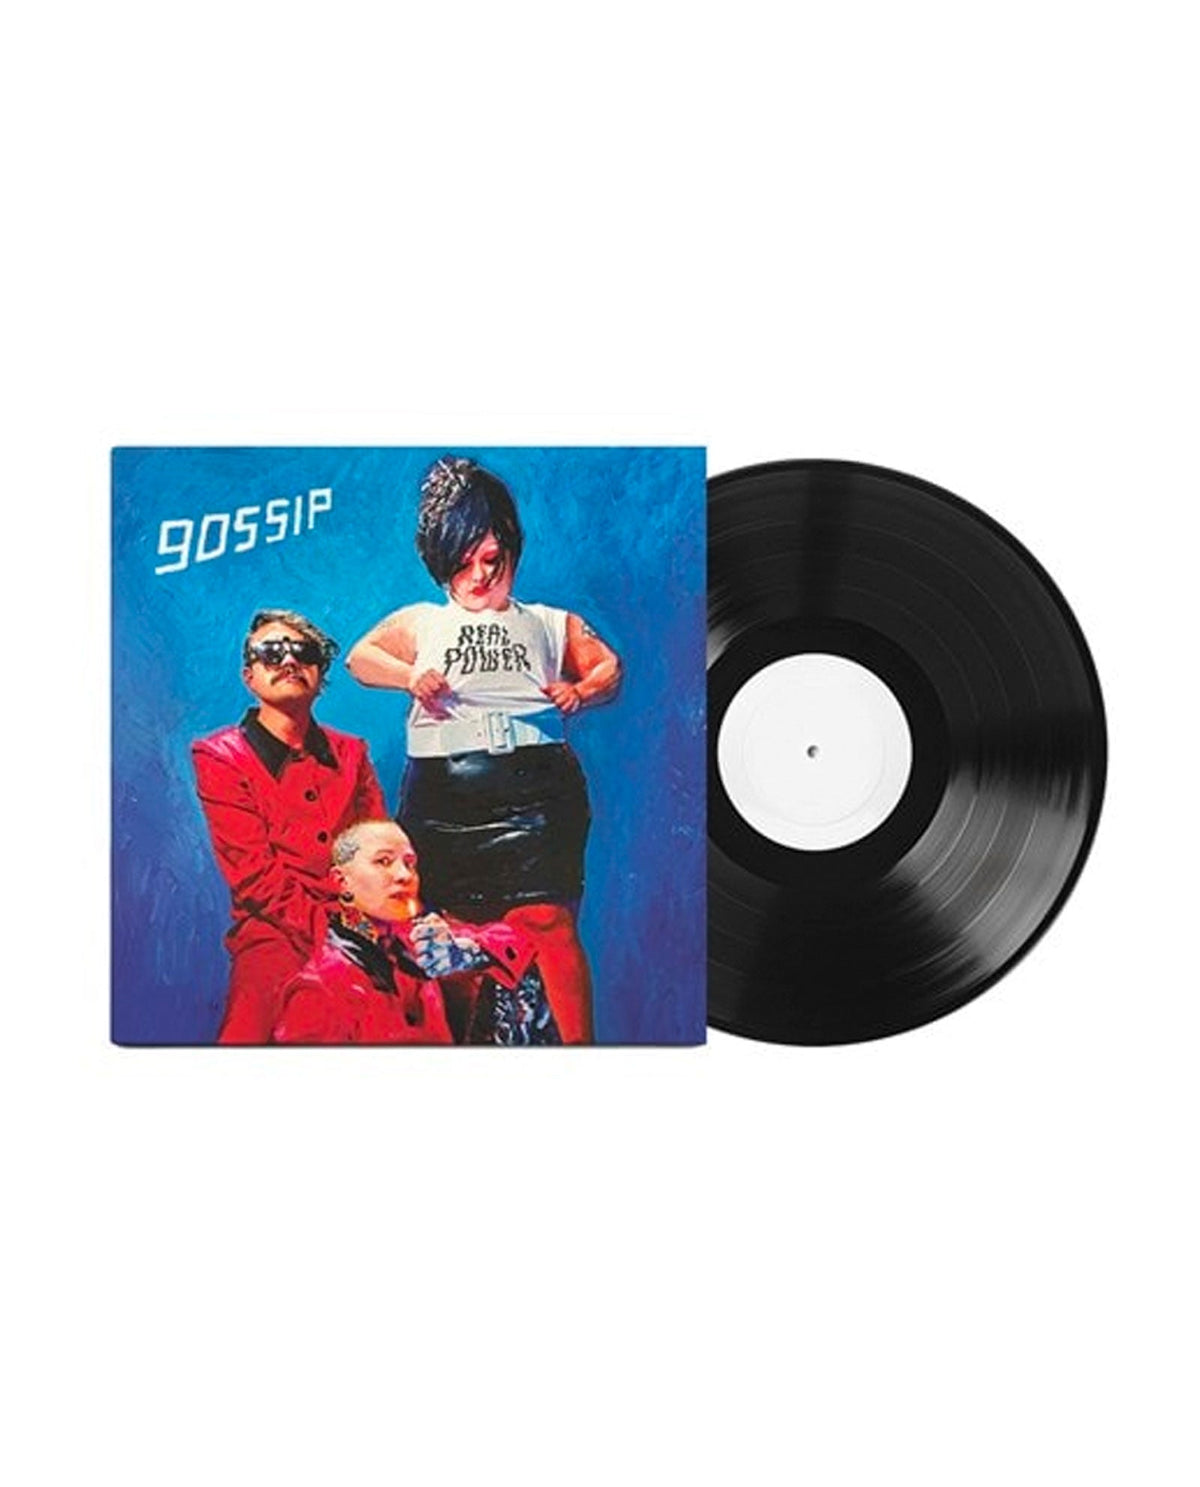 Gossip - LP Vinilo "Real Power" - D2fy · Rocktud - Rocktud